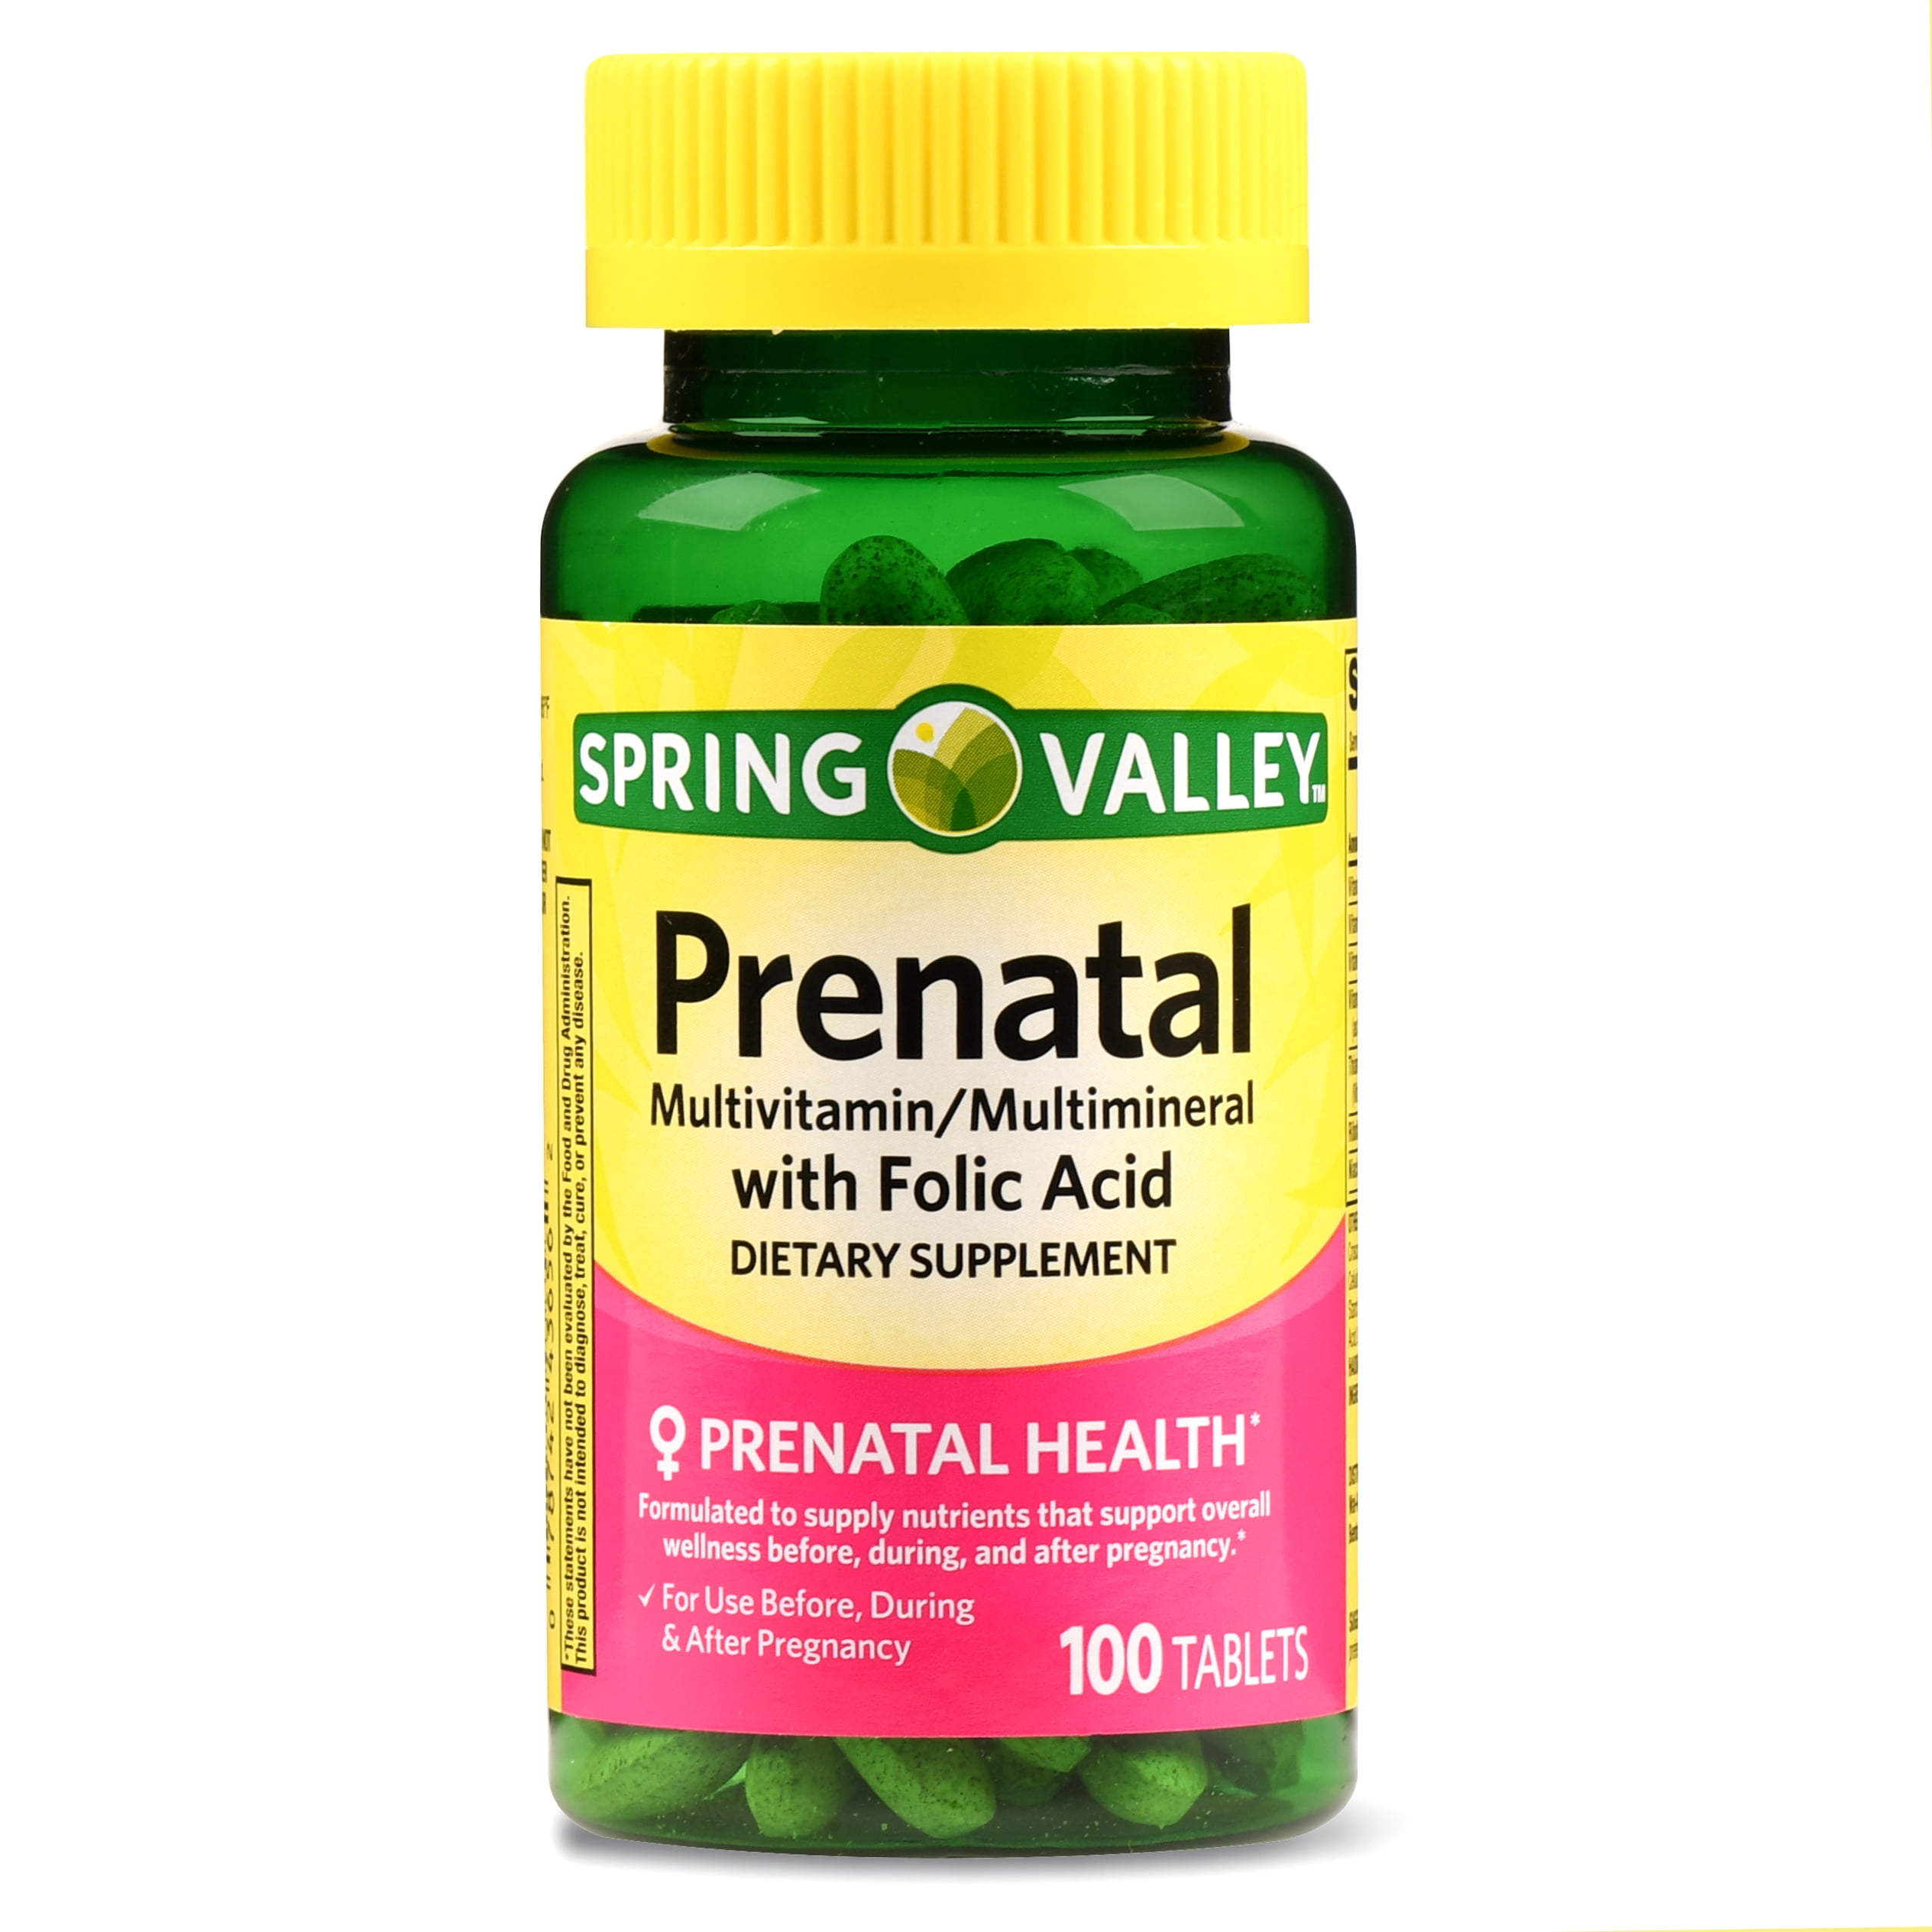 spring-valley-prenatal-multivitamin-multimineral-folic-acid-tablets